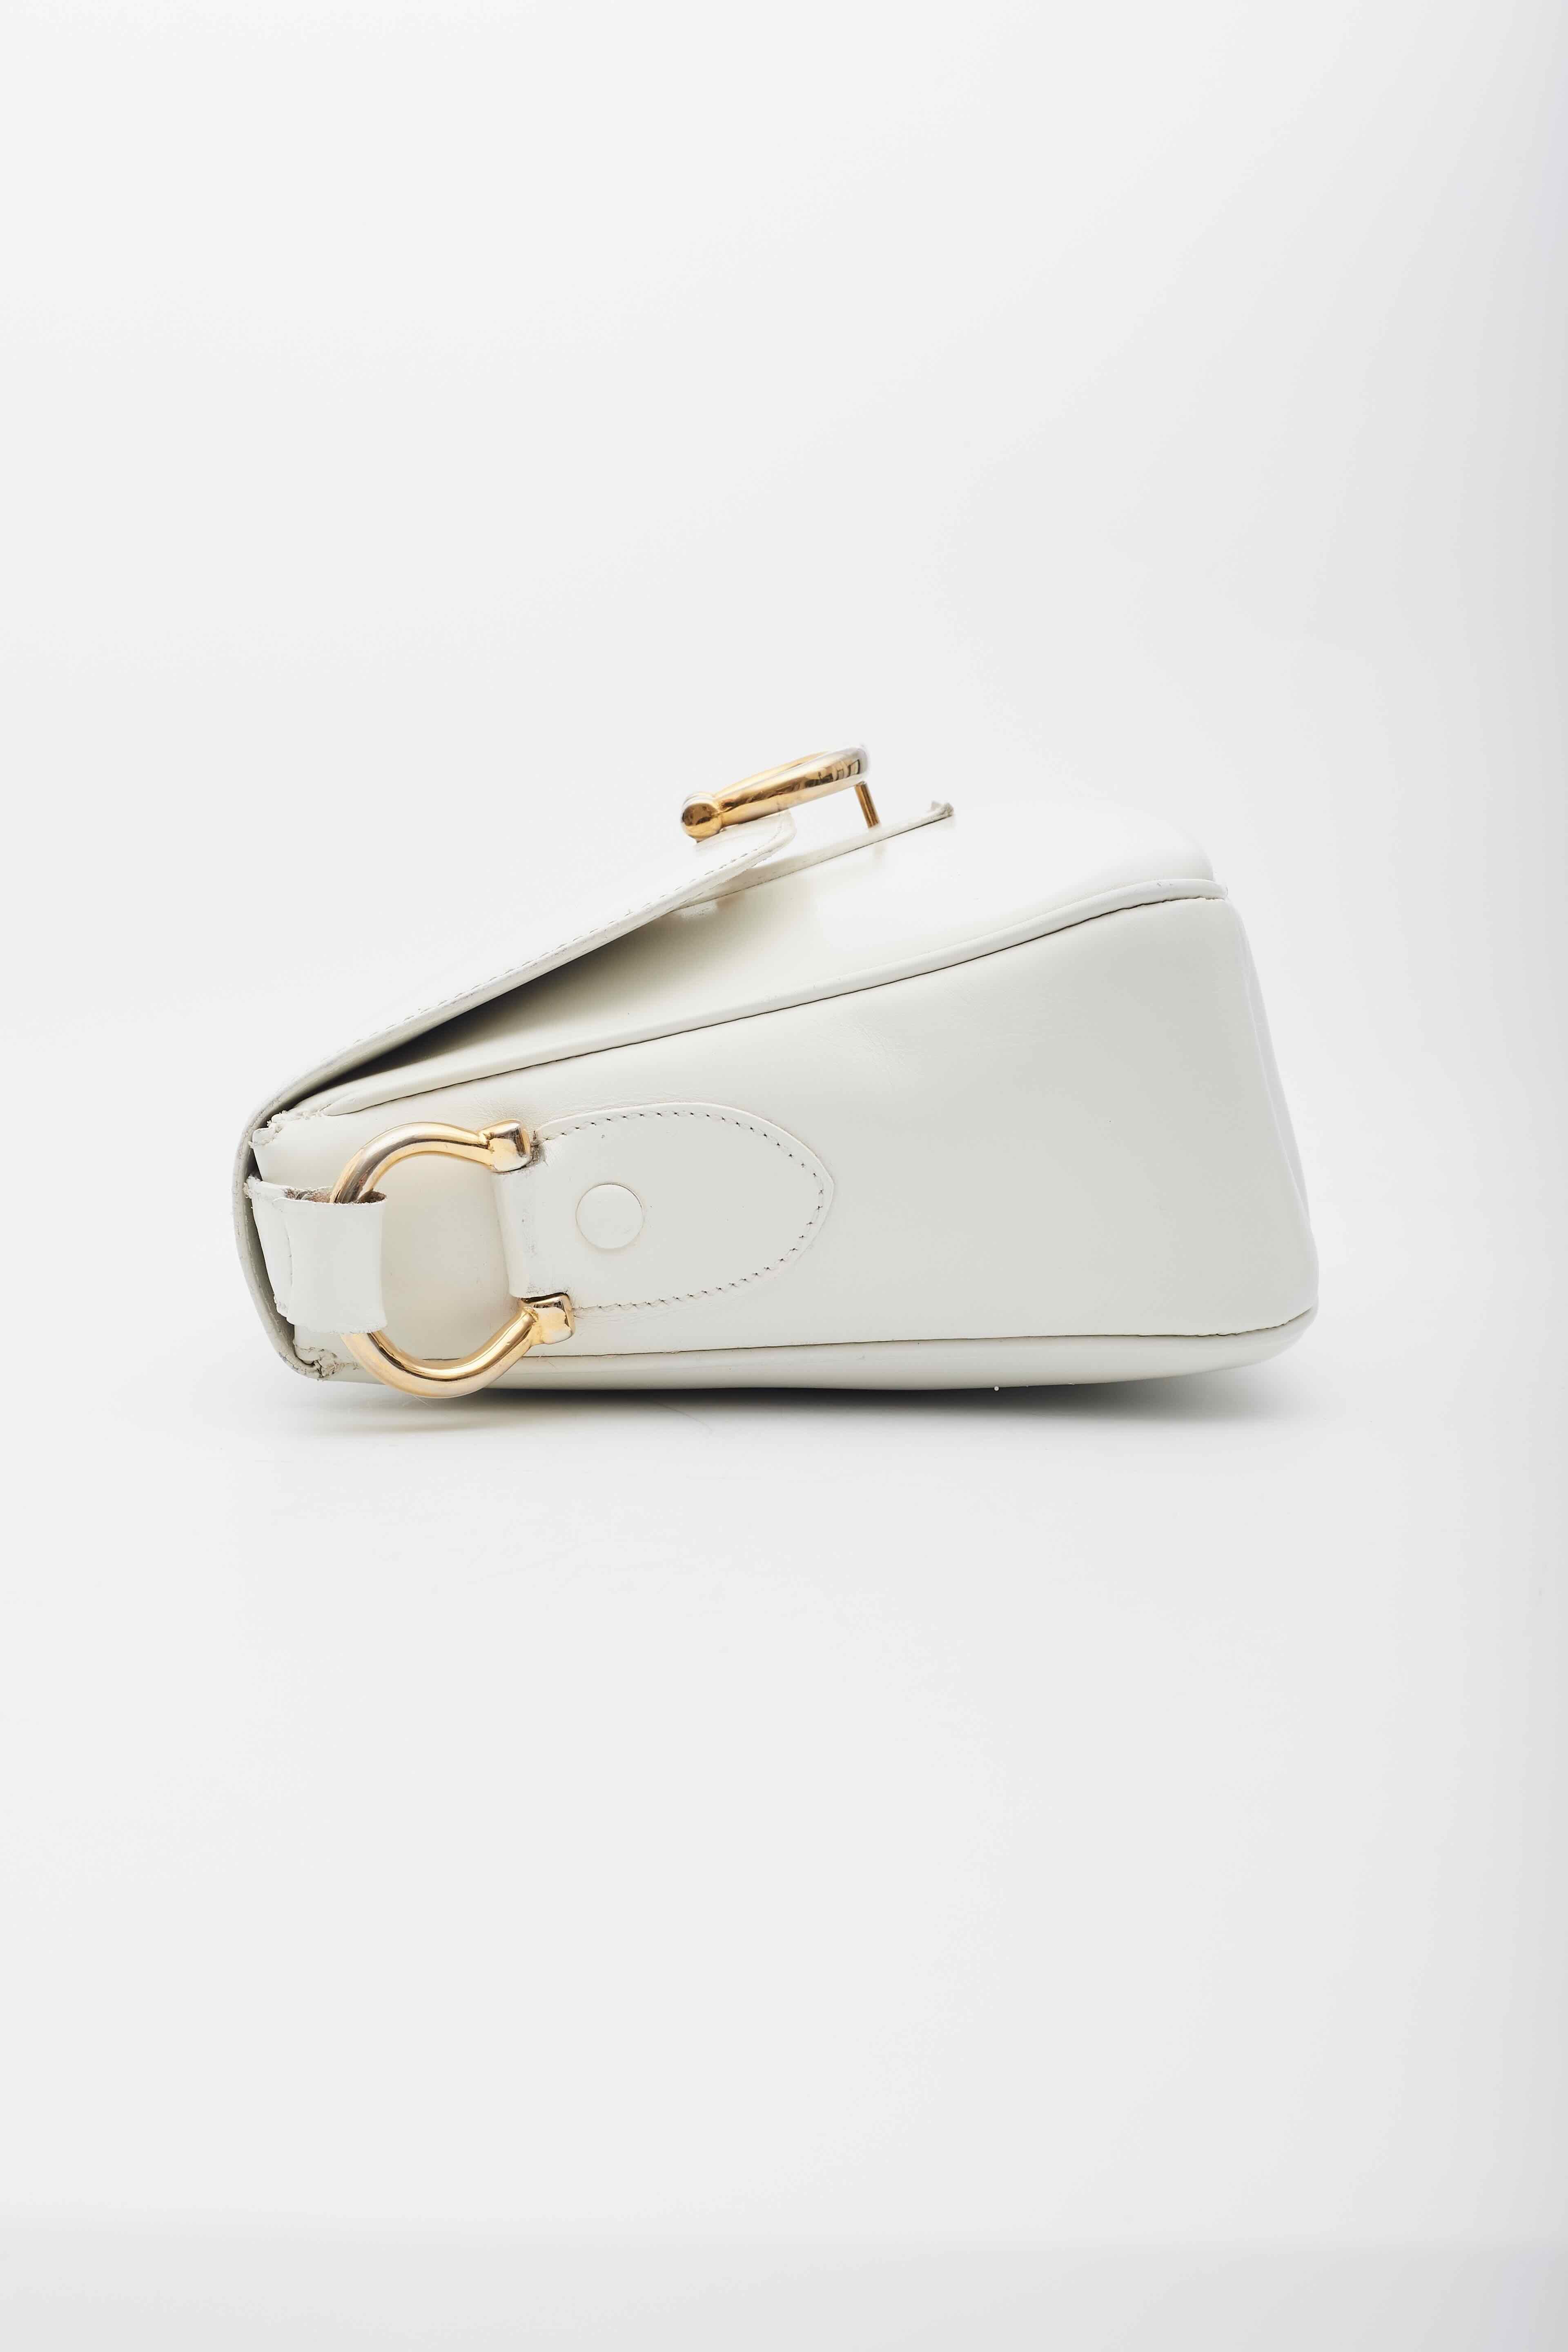 Celine Vintage White Leather Shoulder Bag For Sale 5